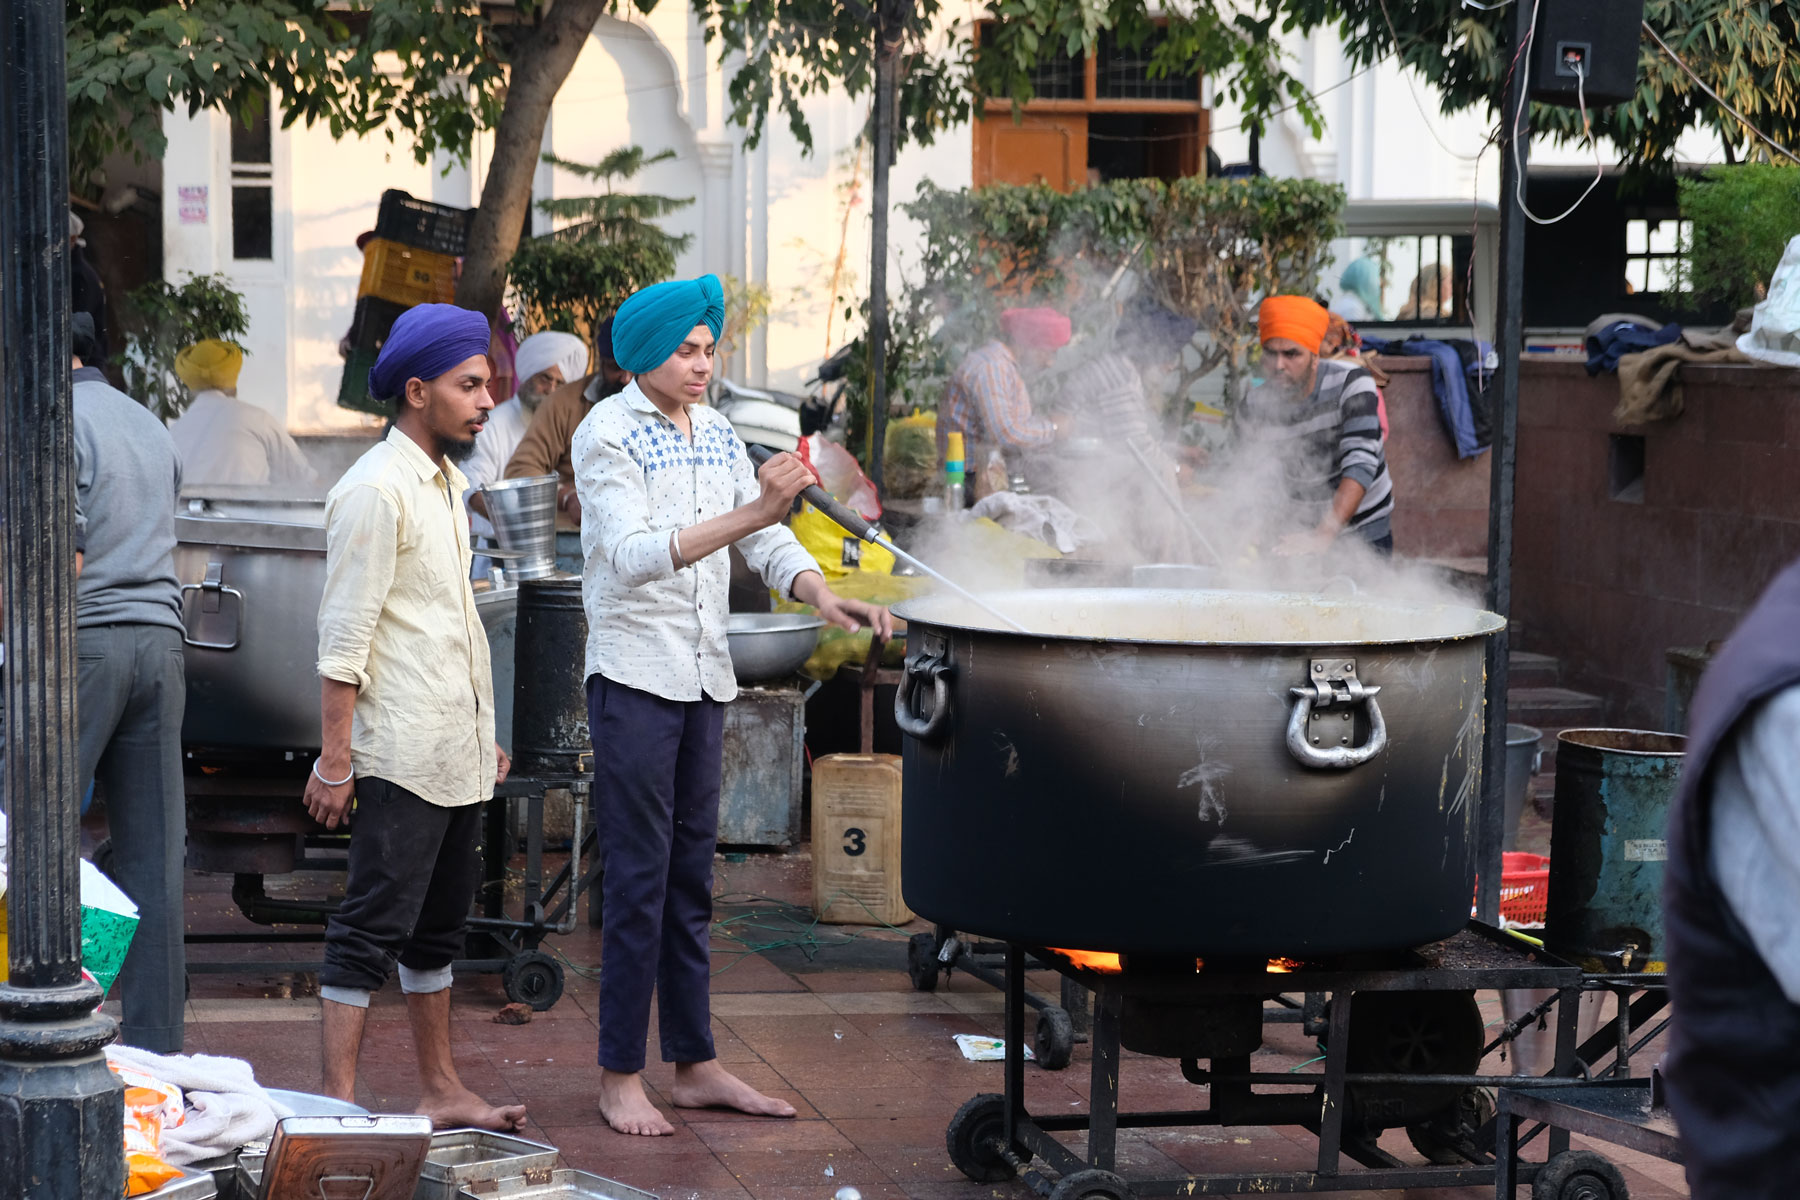 Zwei indischen Jungen stehen neben einem riesigen Kochtopf im Freien.